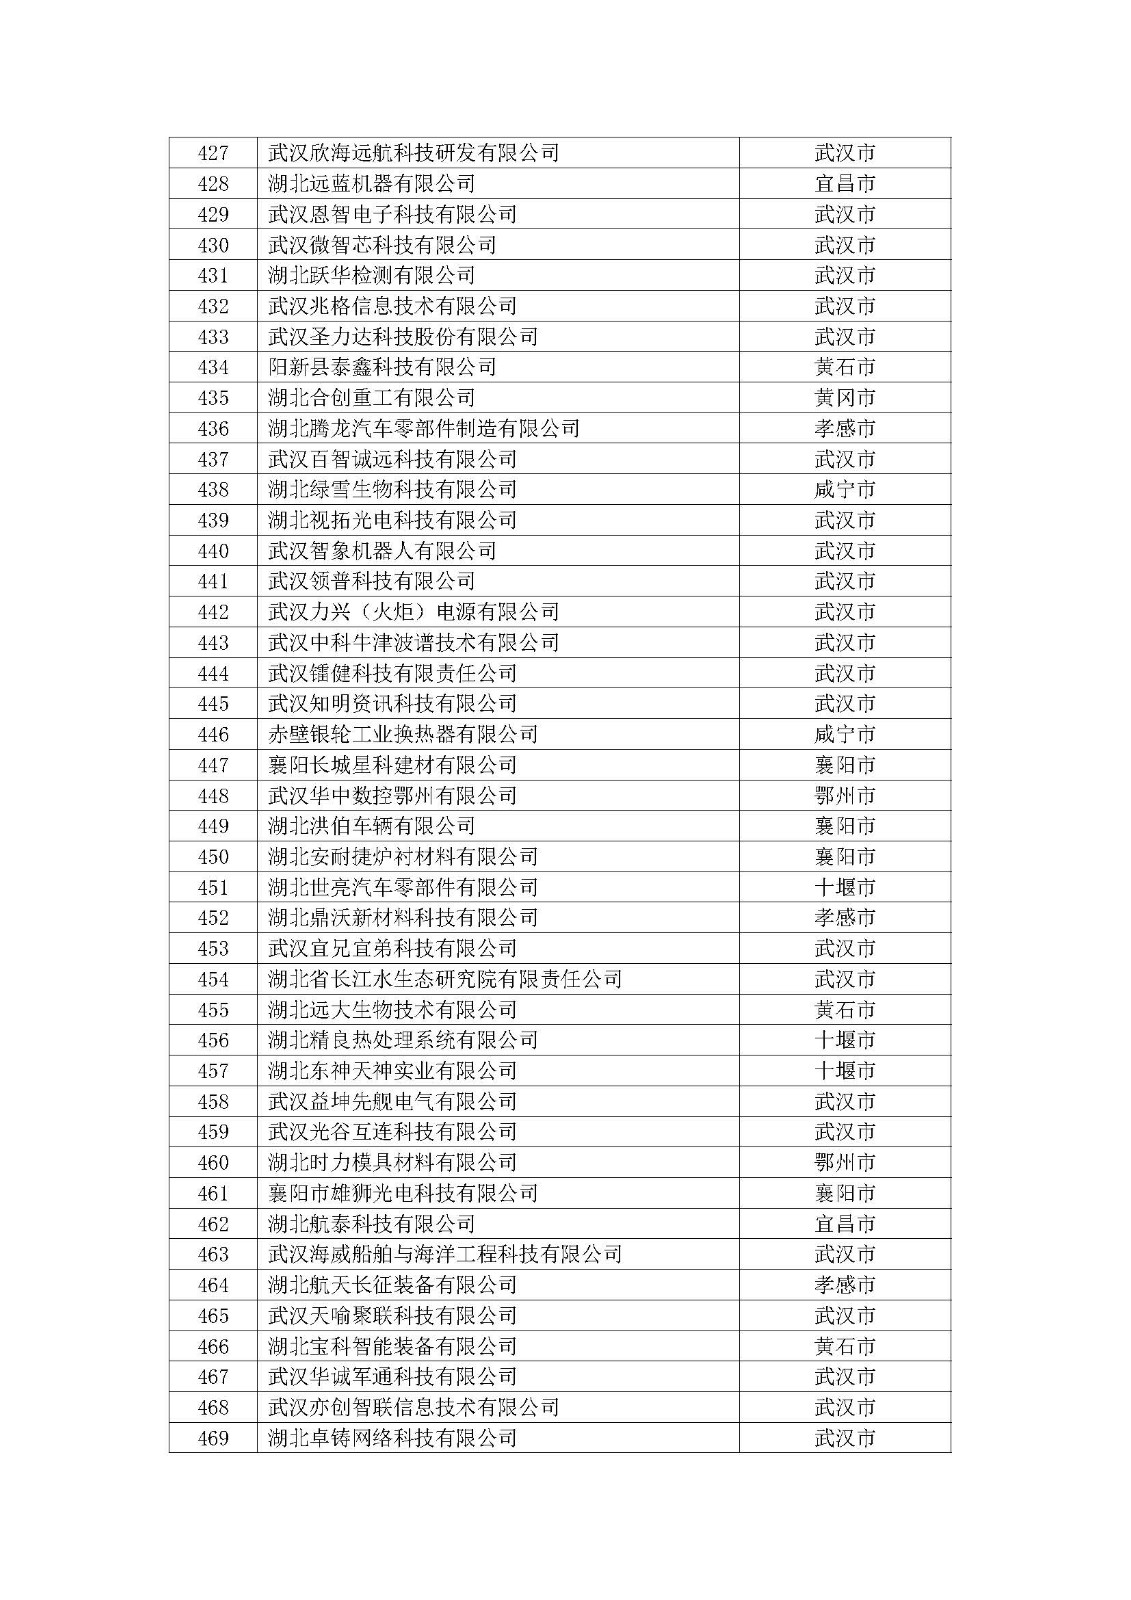 第一批拟入库湖北省科创“新物种”企业名单_页面_12.jpg